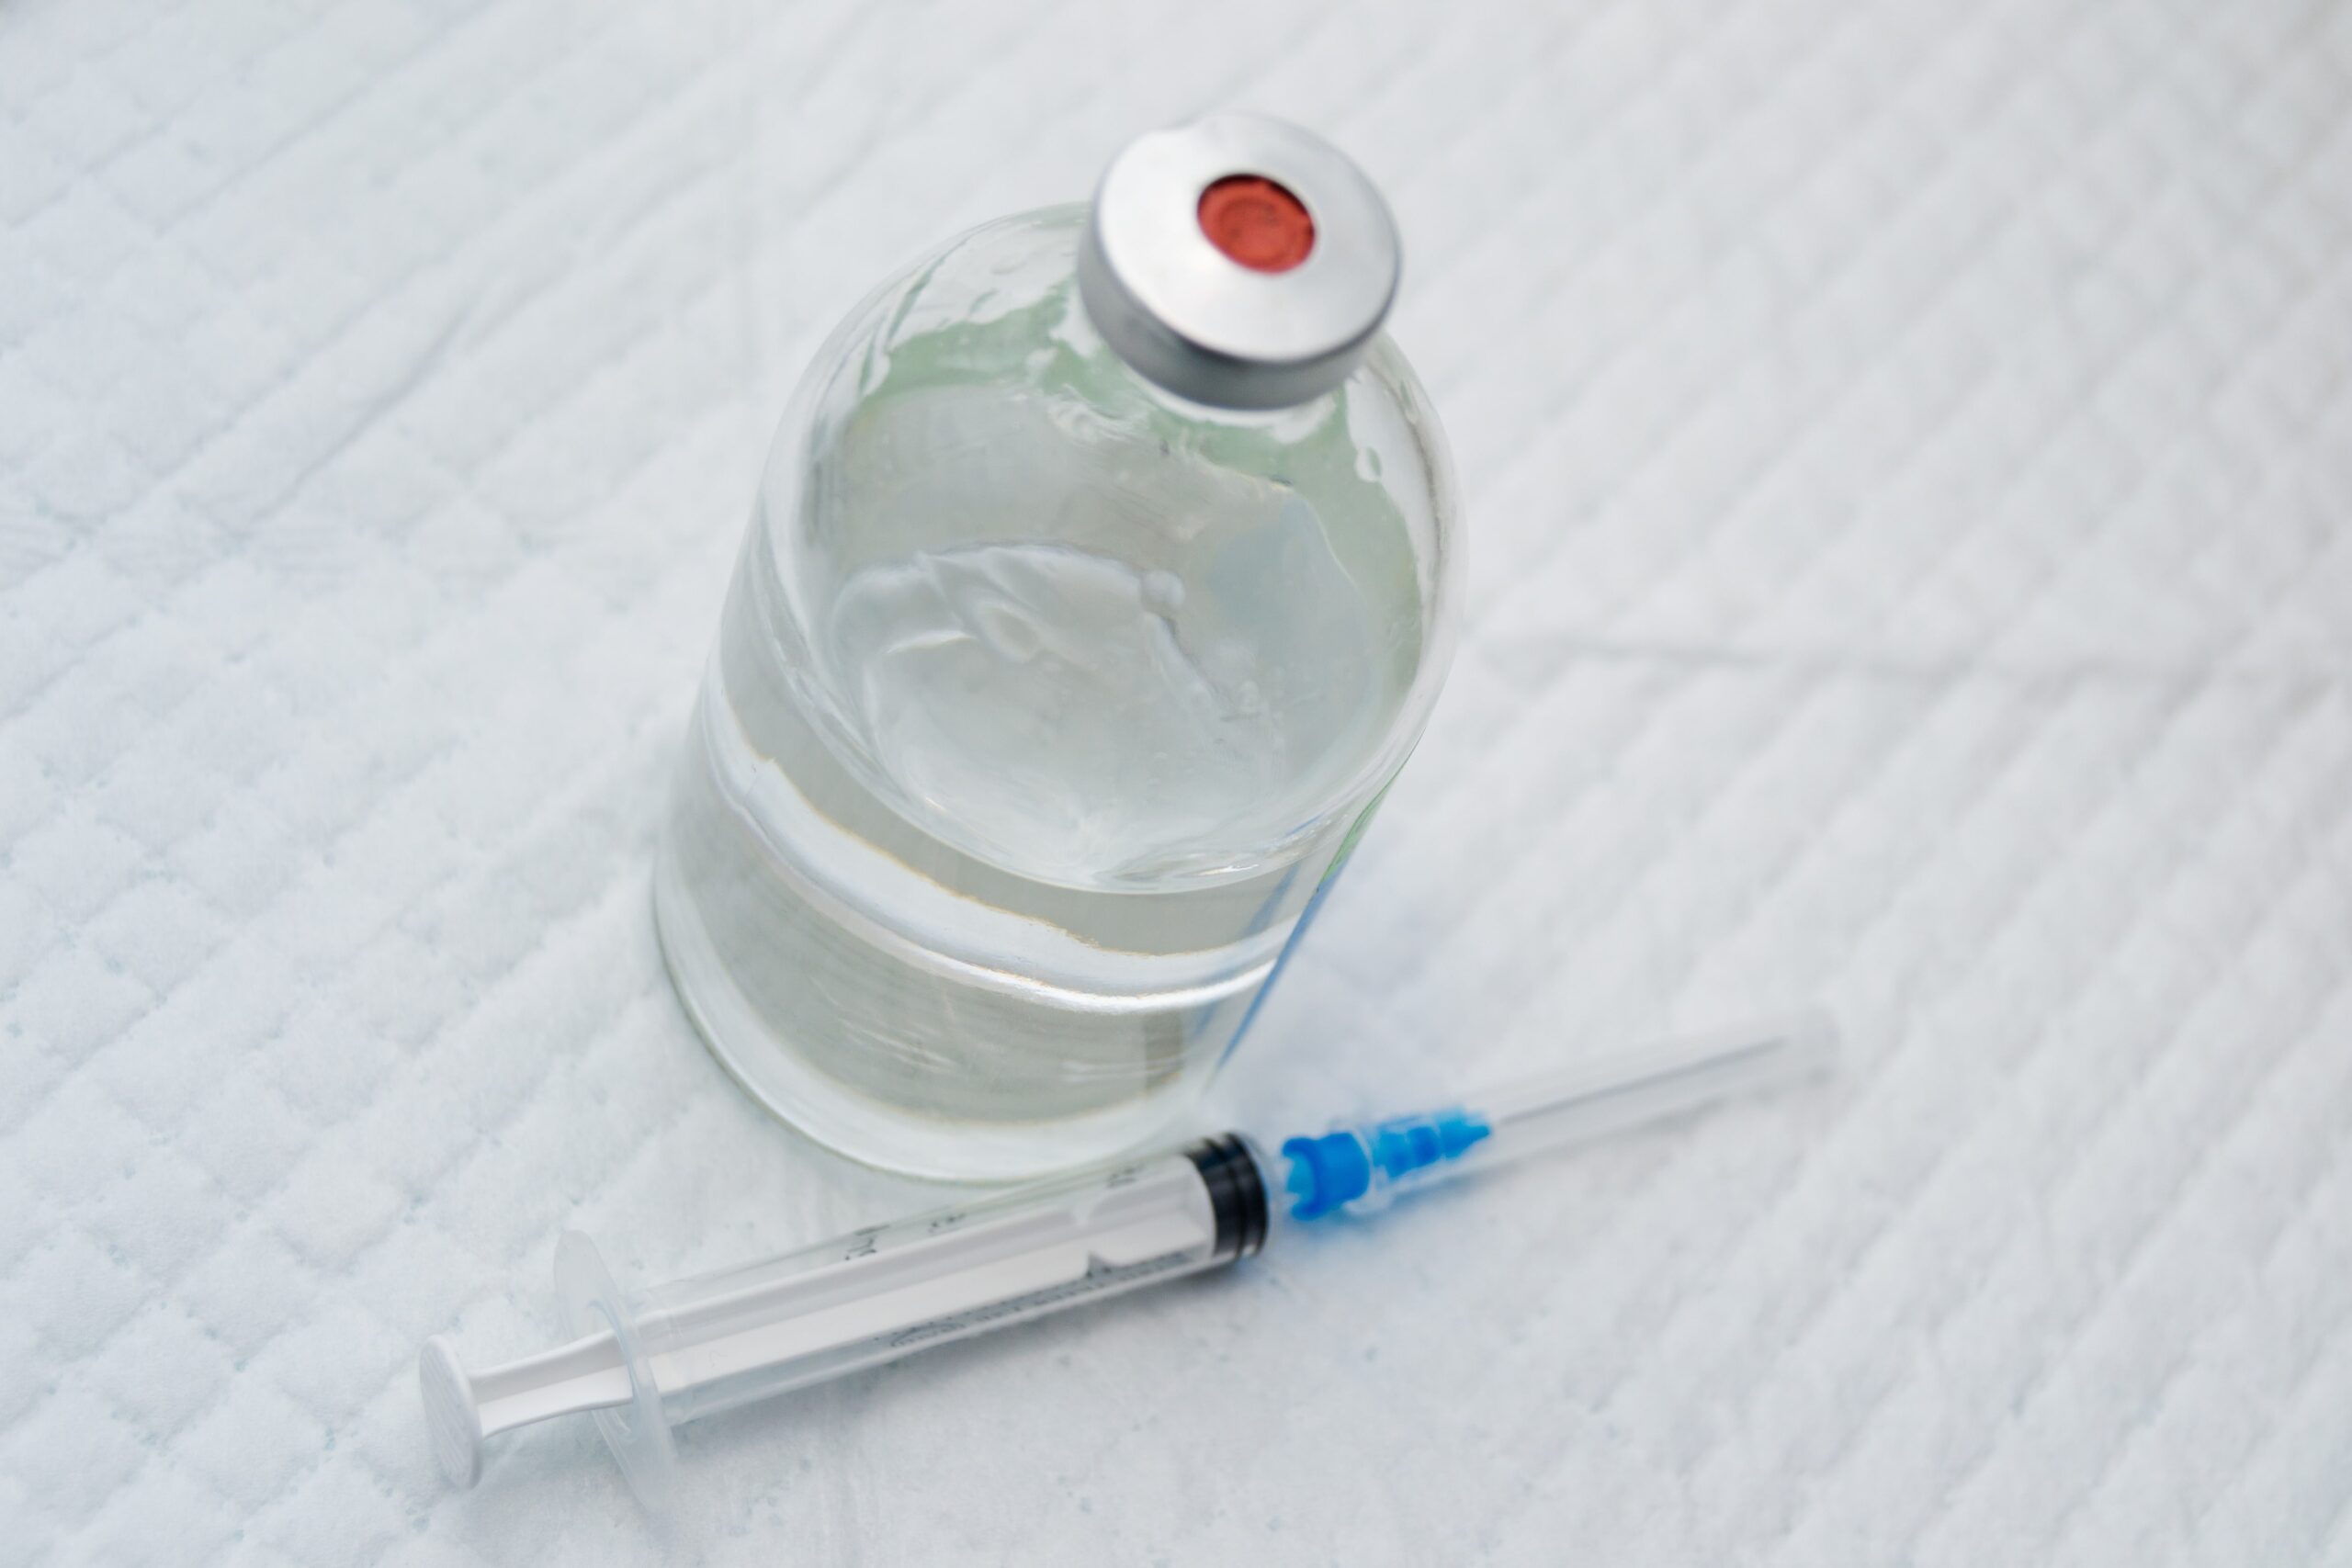 bottle of xylazine next to syringe